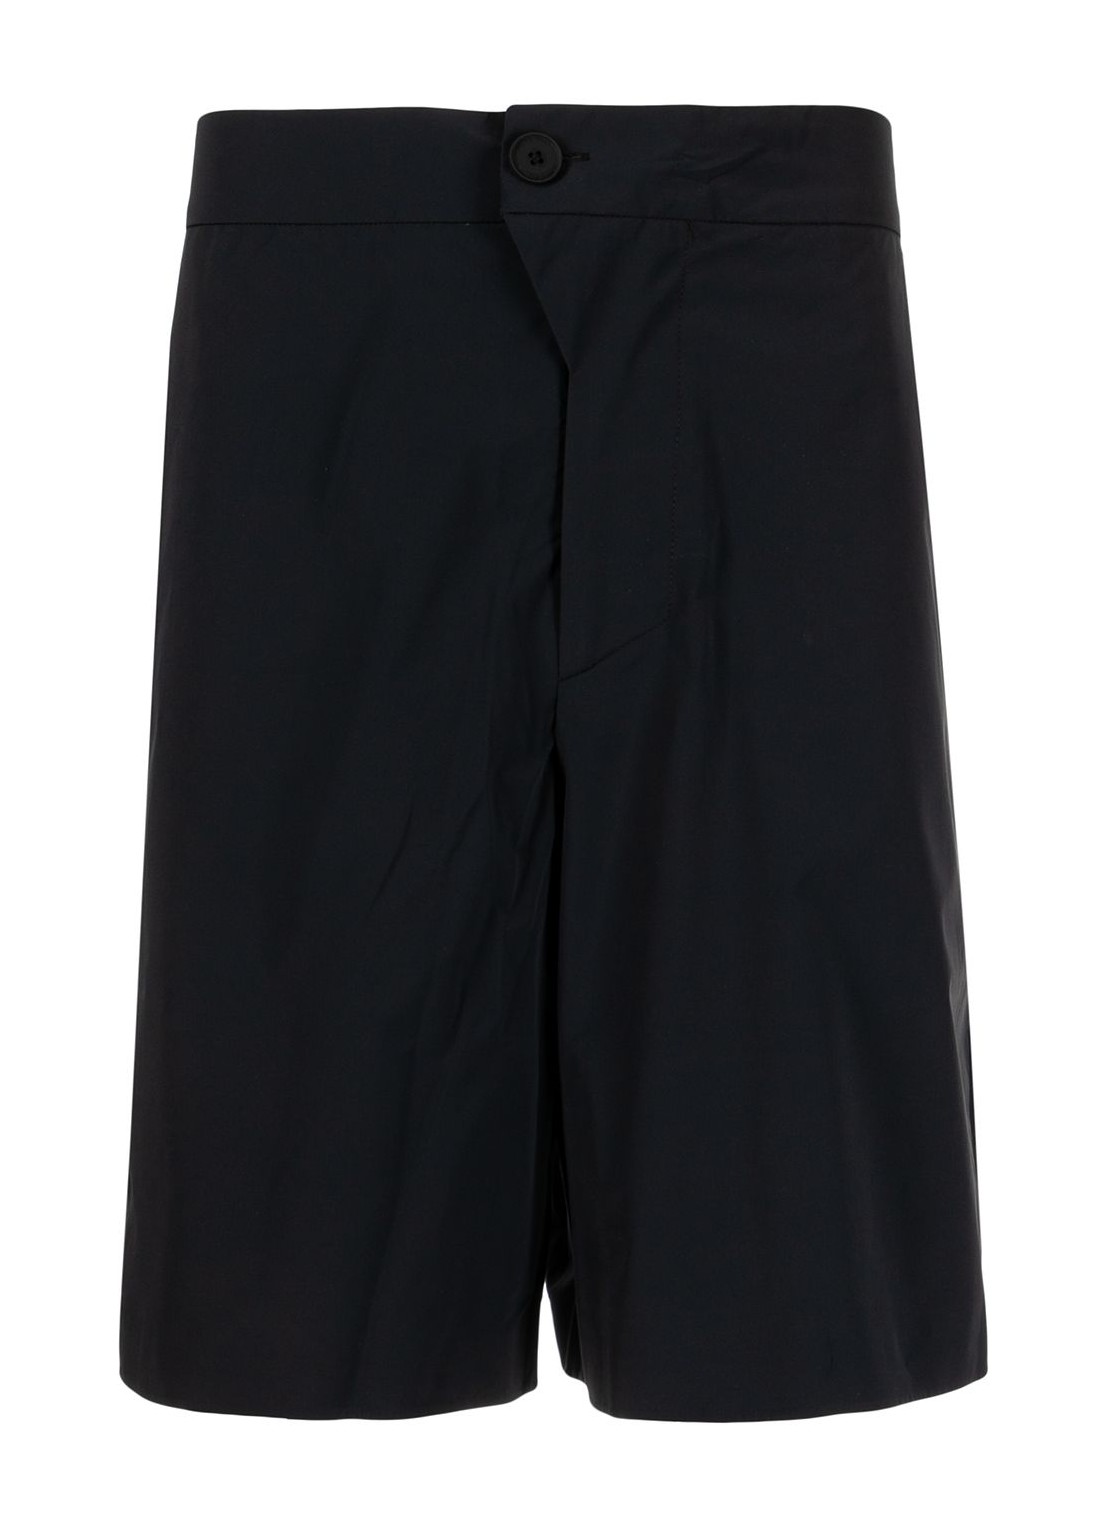 Pantalon corto a-cold-wall* short pant man essentials shorts acwmb069 black black talla negro
 